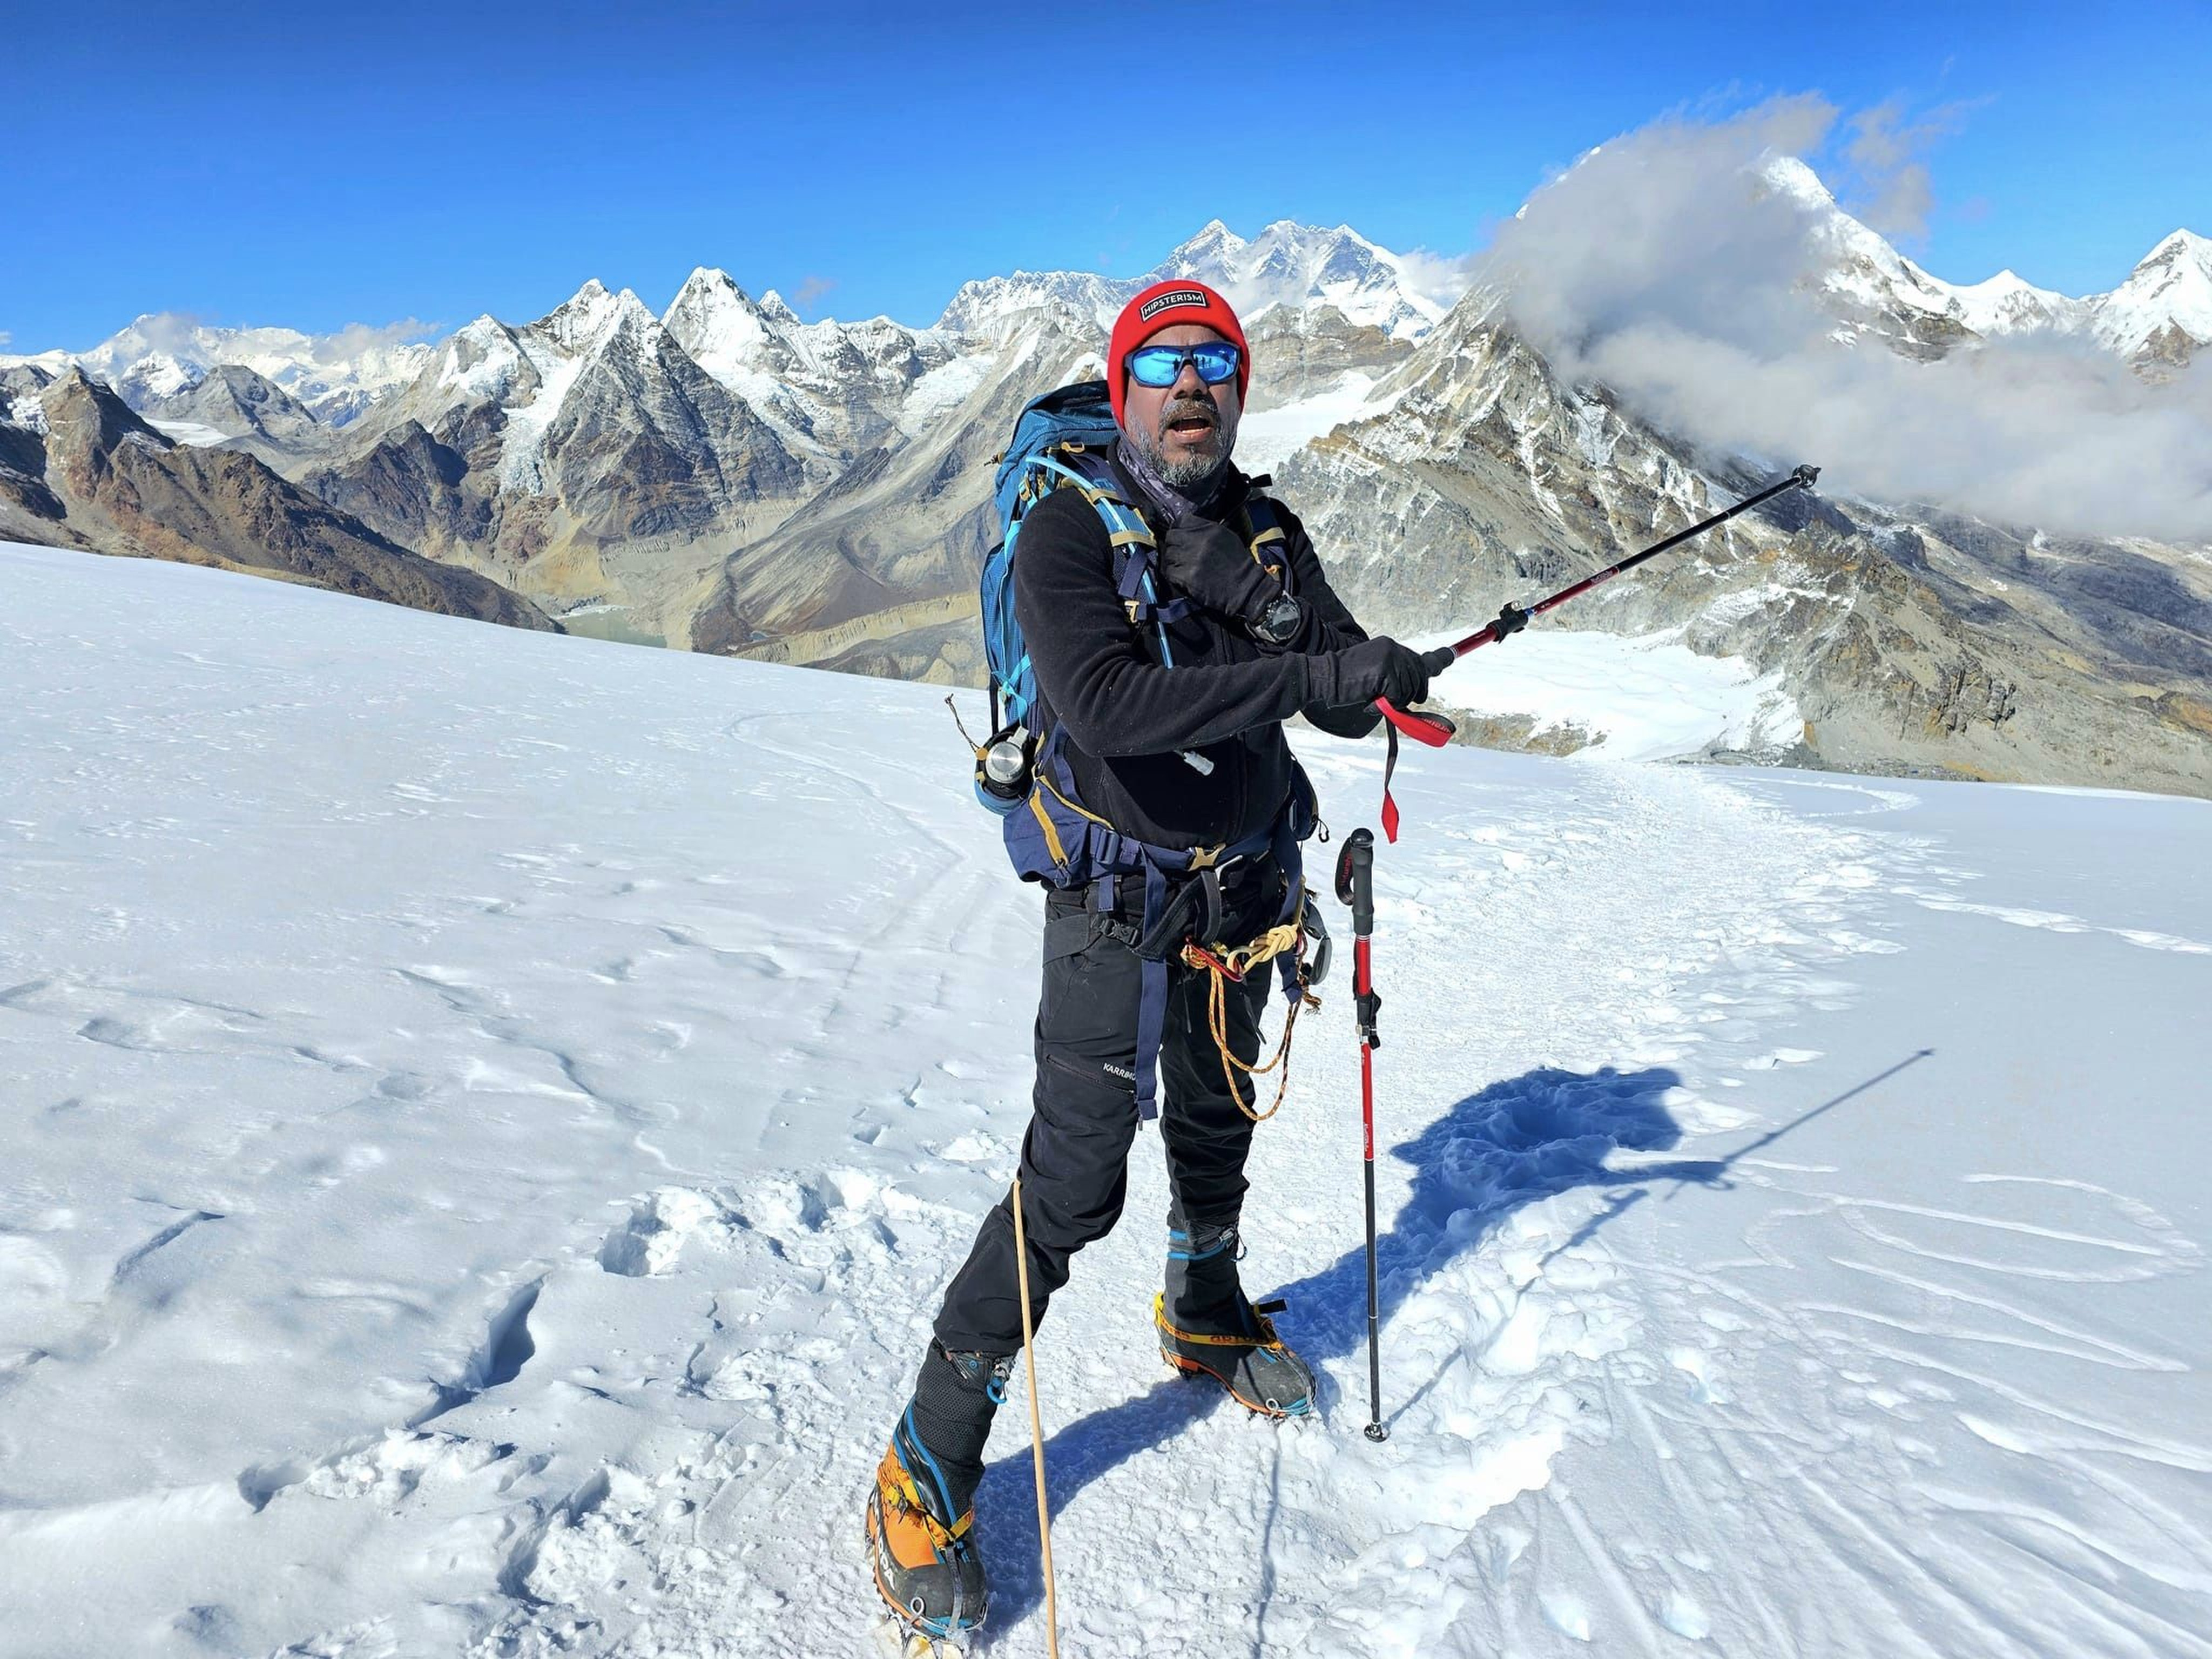 Malaysian climber Mohamed Sadik Abdul Kadir pictured high on Mera Peak in the Himalayas. Photo: Facebook/Mohd Sadik